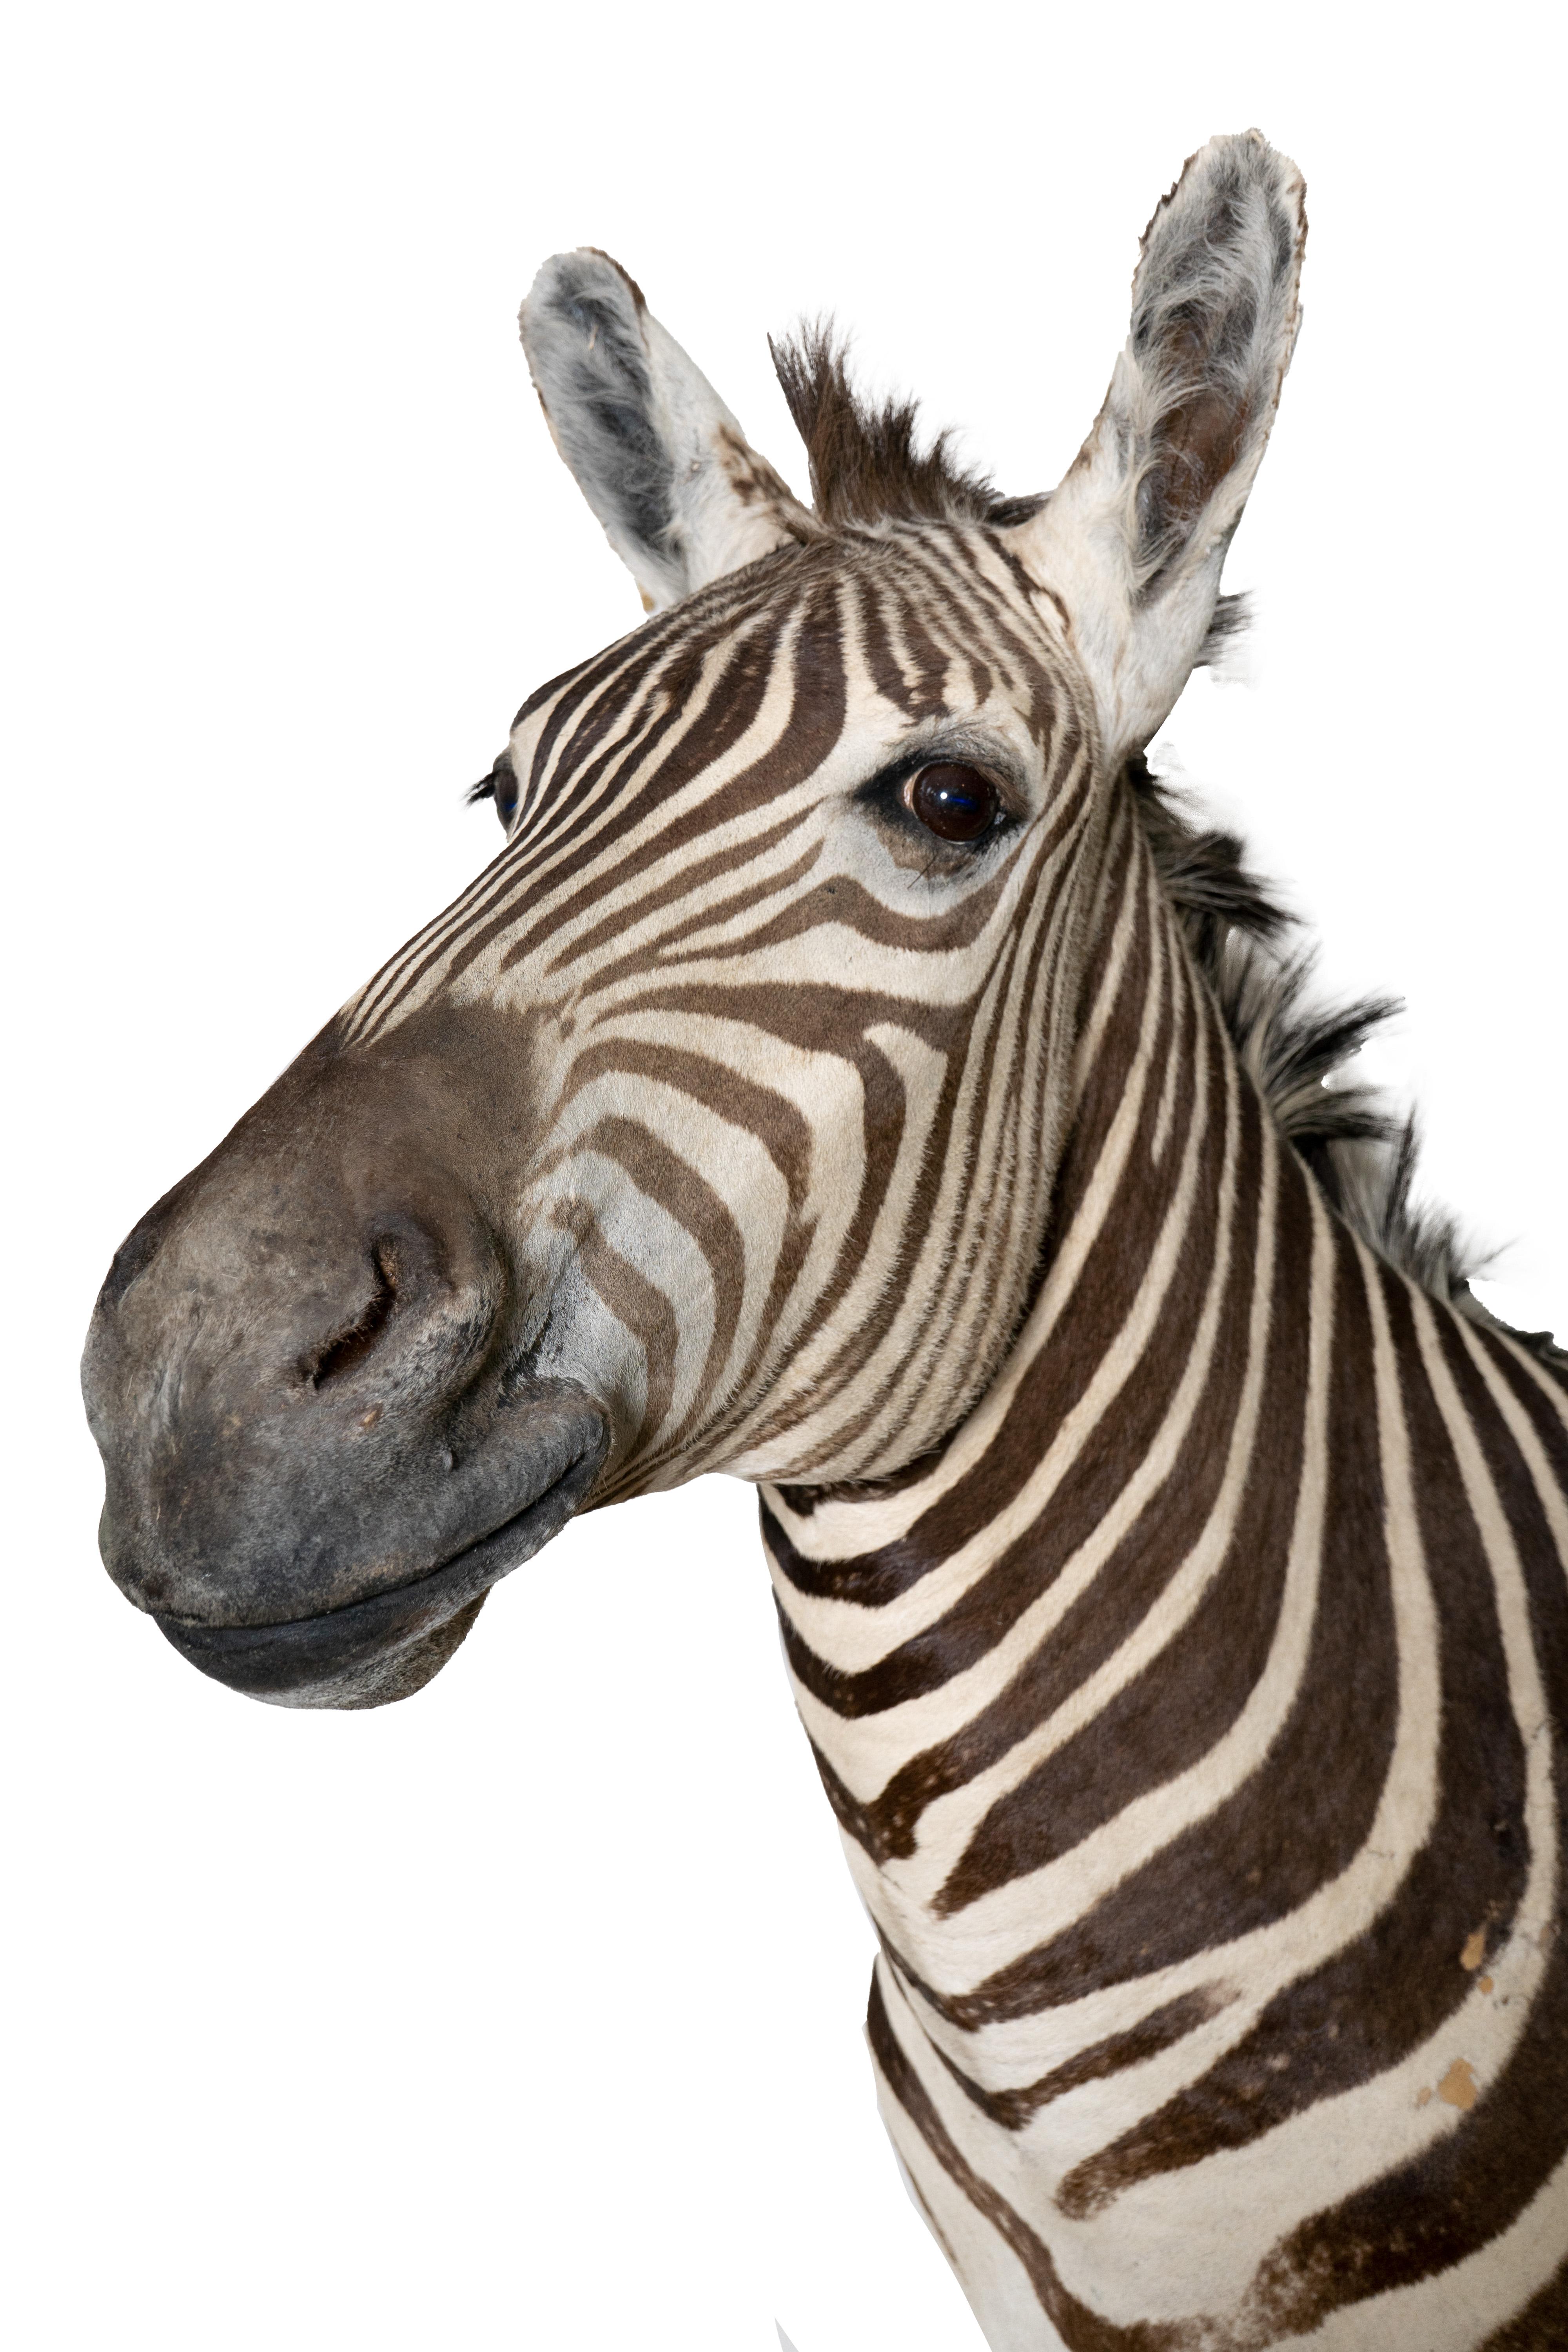 Dieser taxidermische afrikanische Zebrakopf ist ein wirklich beeindruckendes Stück, das die Schönheit und Majestät dieses ikonischen Tieres einfängt. Auf einem rustikalen, weiß gewaschenen Holzsockel montiert, ist dieses Kunstwerk mit Sicherheit der